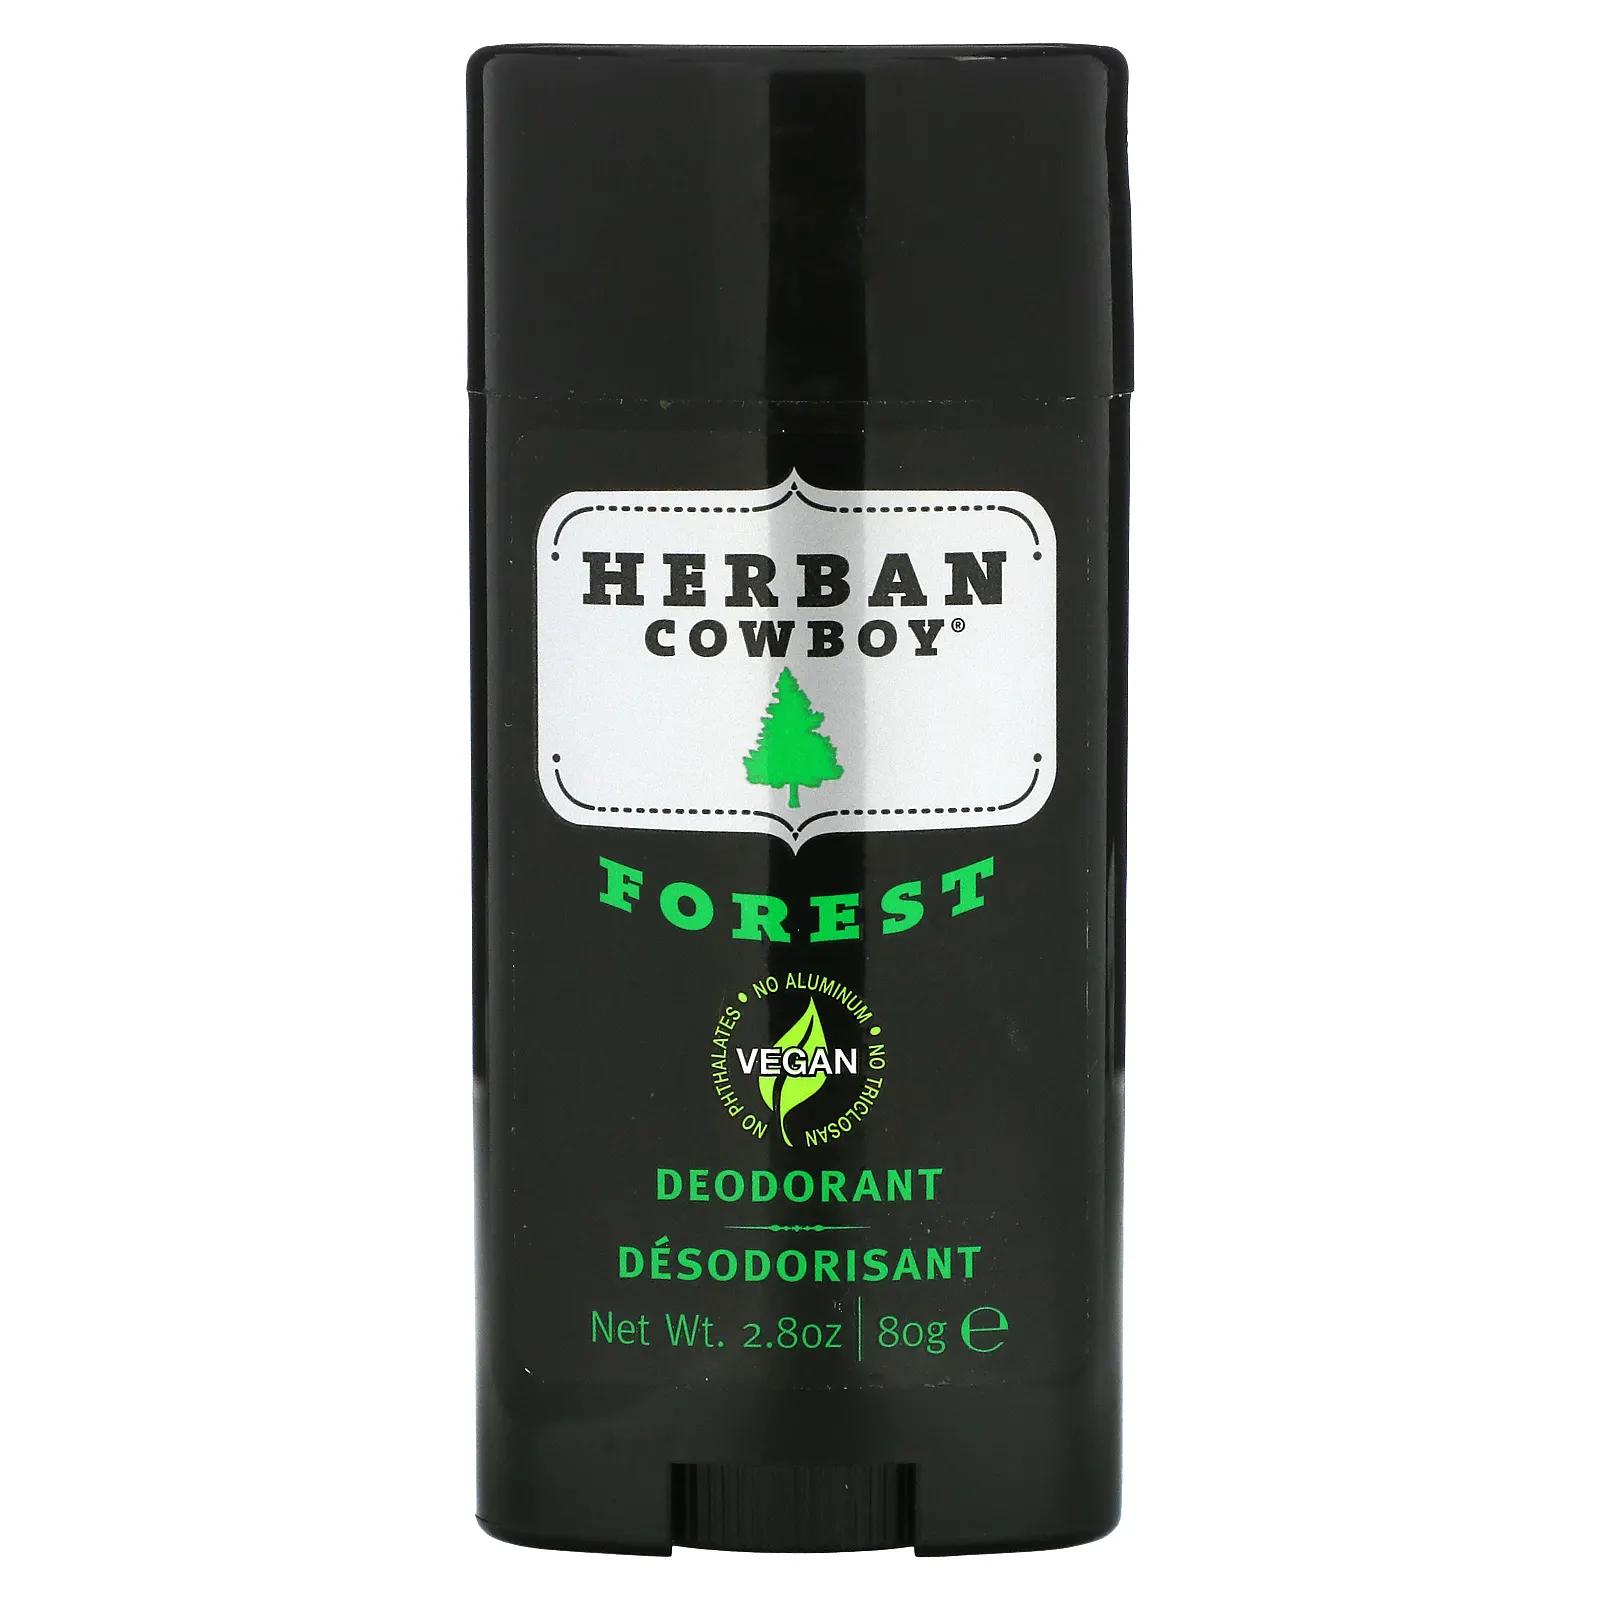 Herban Cowboy Forest дезодорант с максимальной защитой 80 г